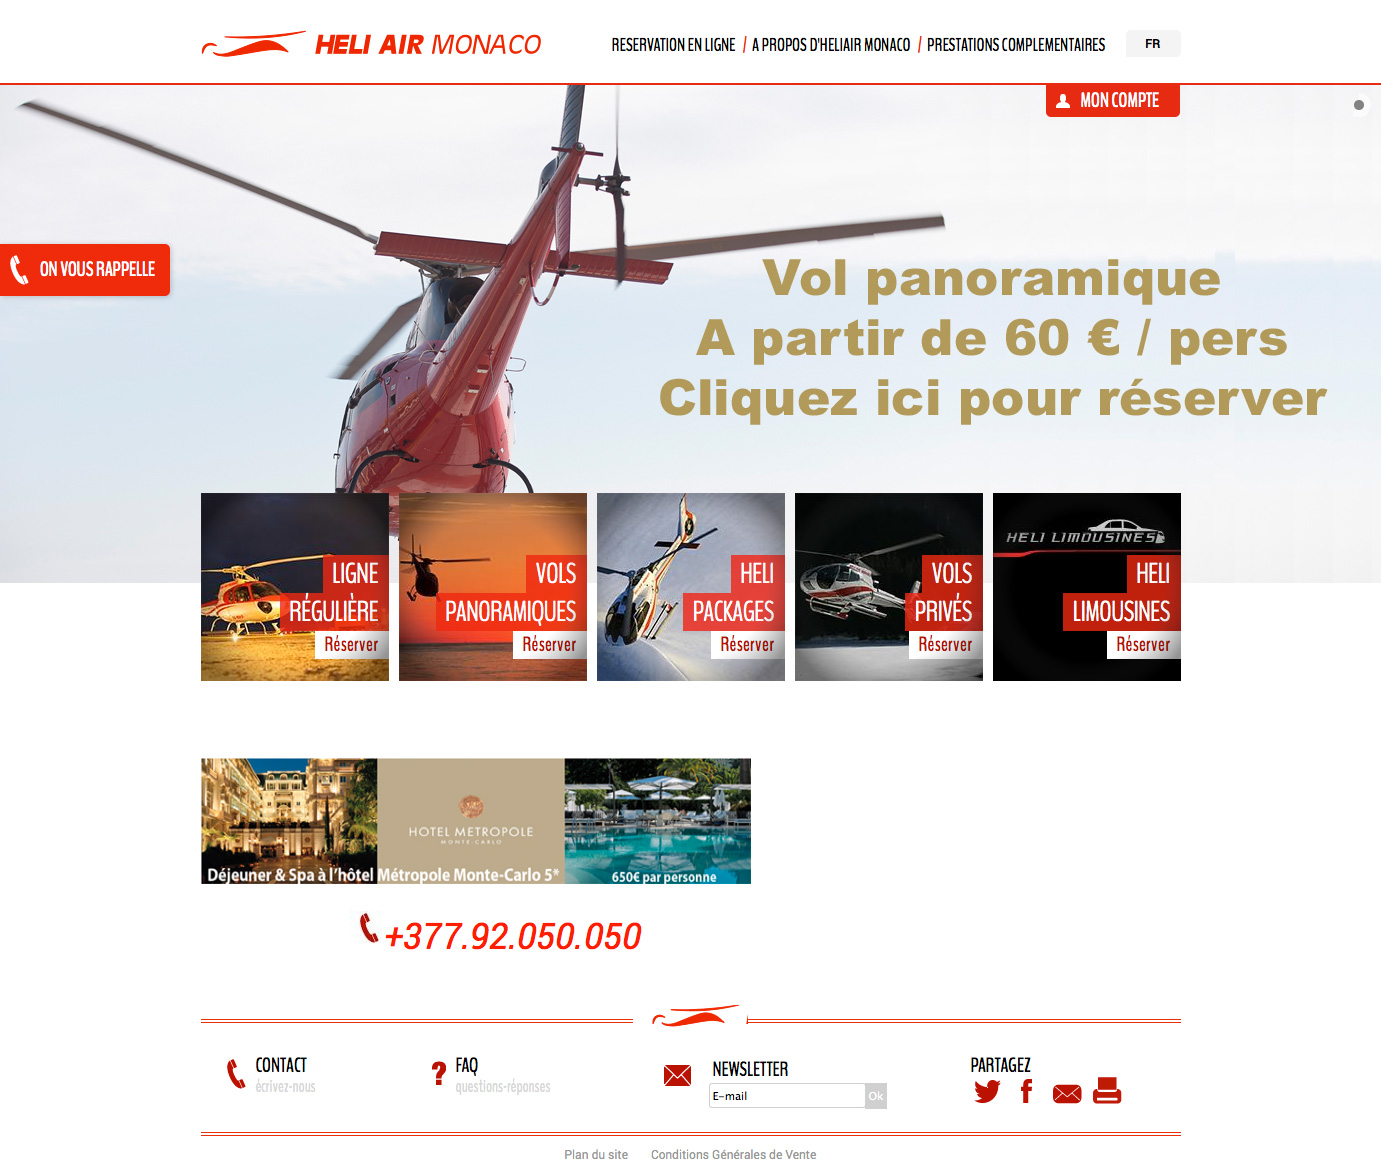 Héliair monaco - Héliair Monaco - Agence Colibri, Design - Réalisation du site internet heliairmonaco.com - 1